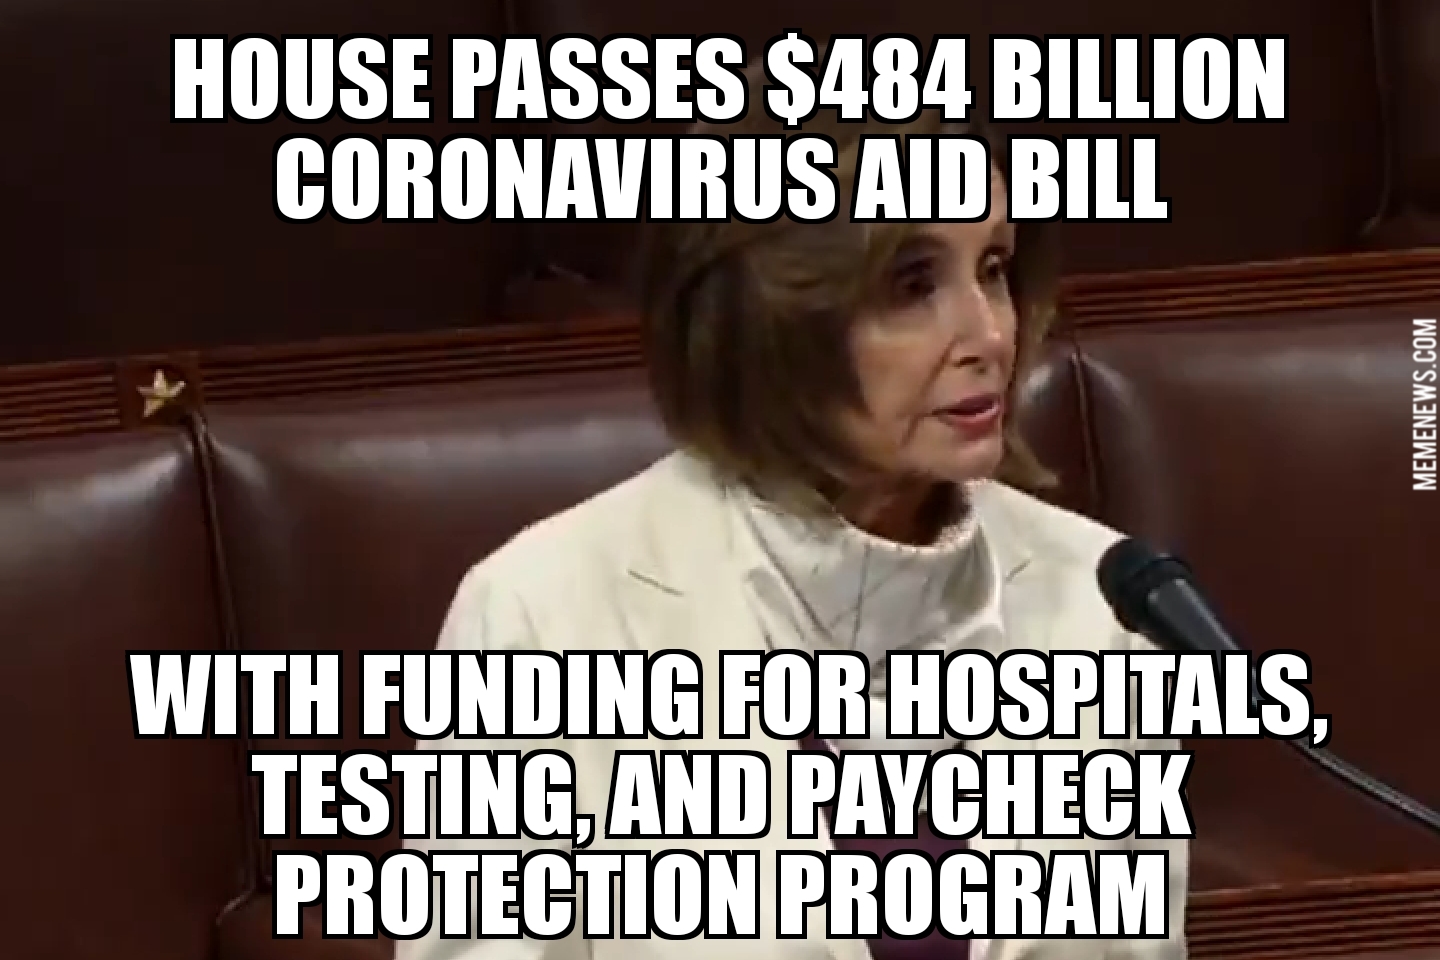 House passes $484B coronavirus aid